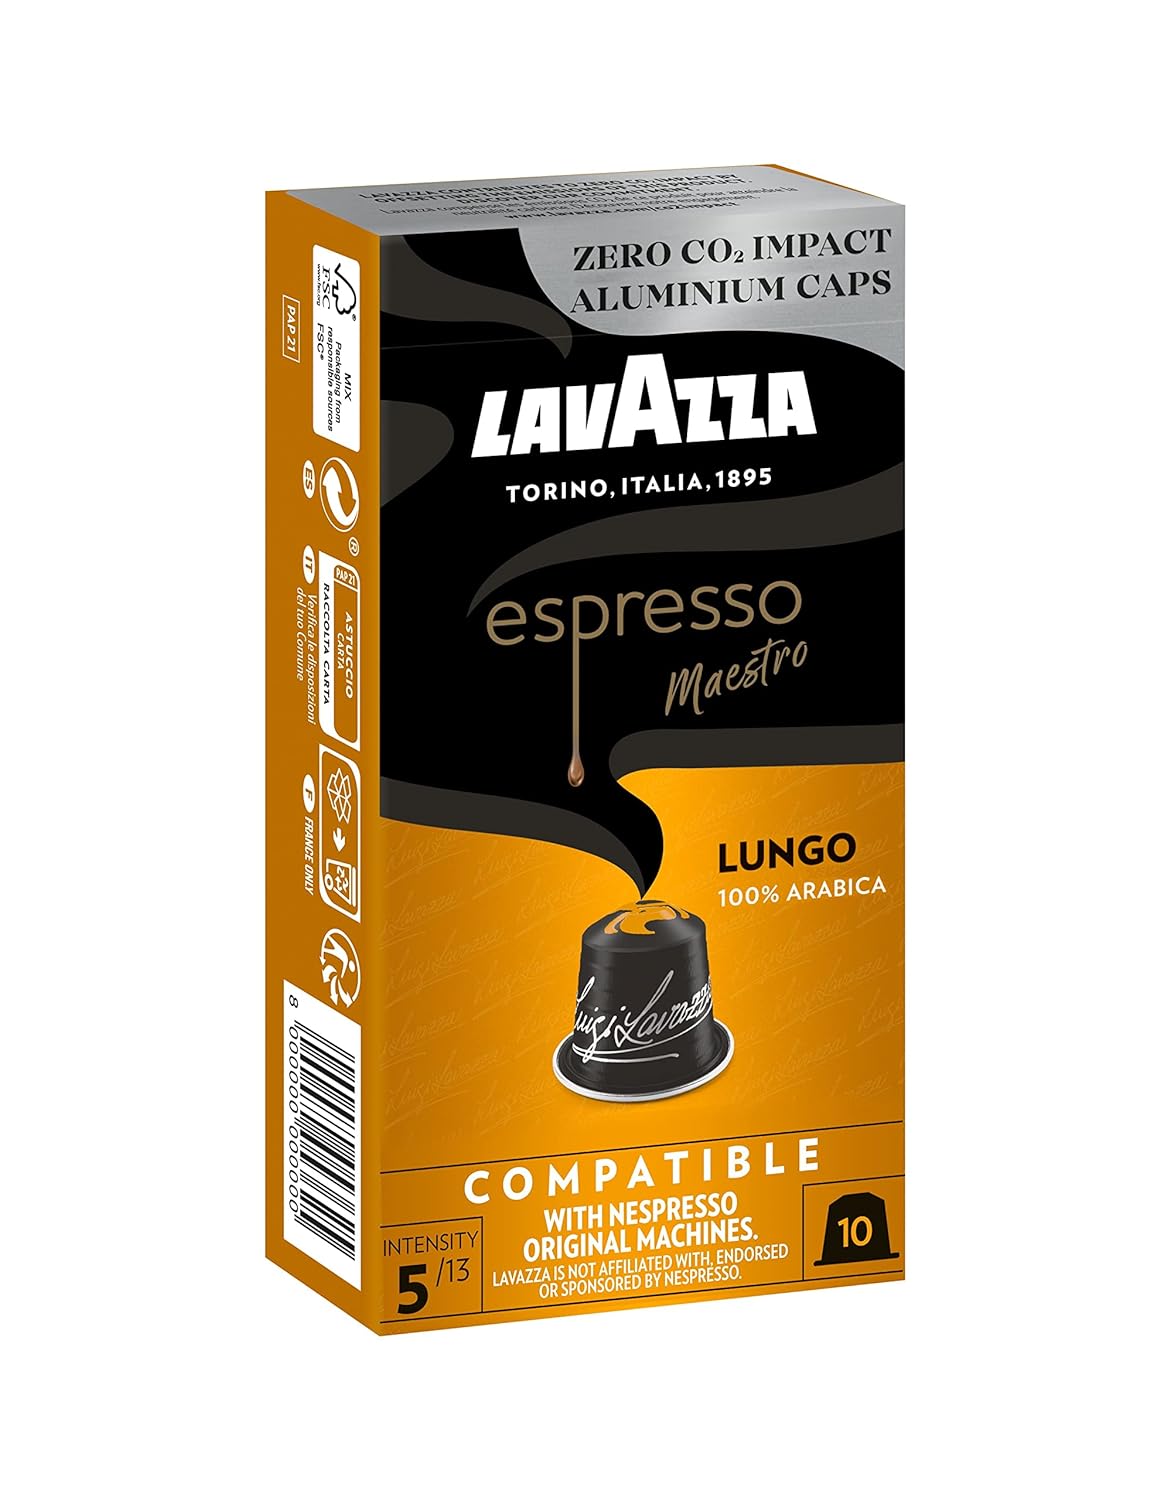 Lavazza espresso lungo, floral and aromatic espresso, 10 capsules, Nespresso compatible